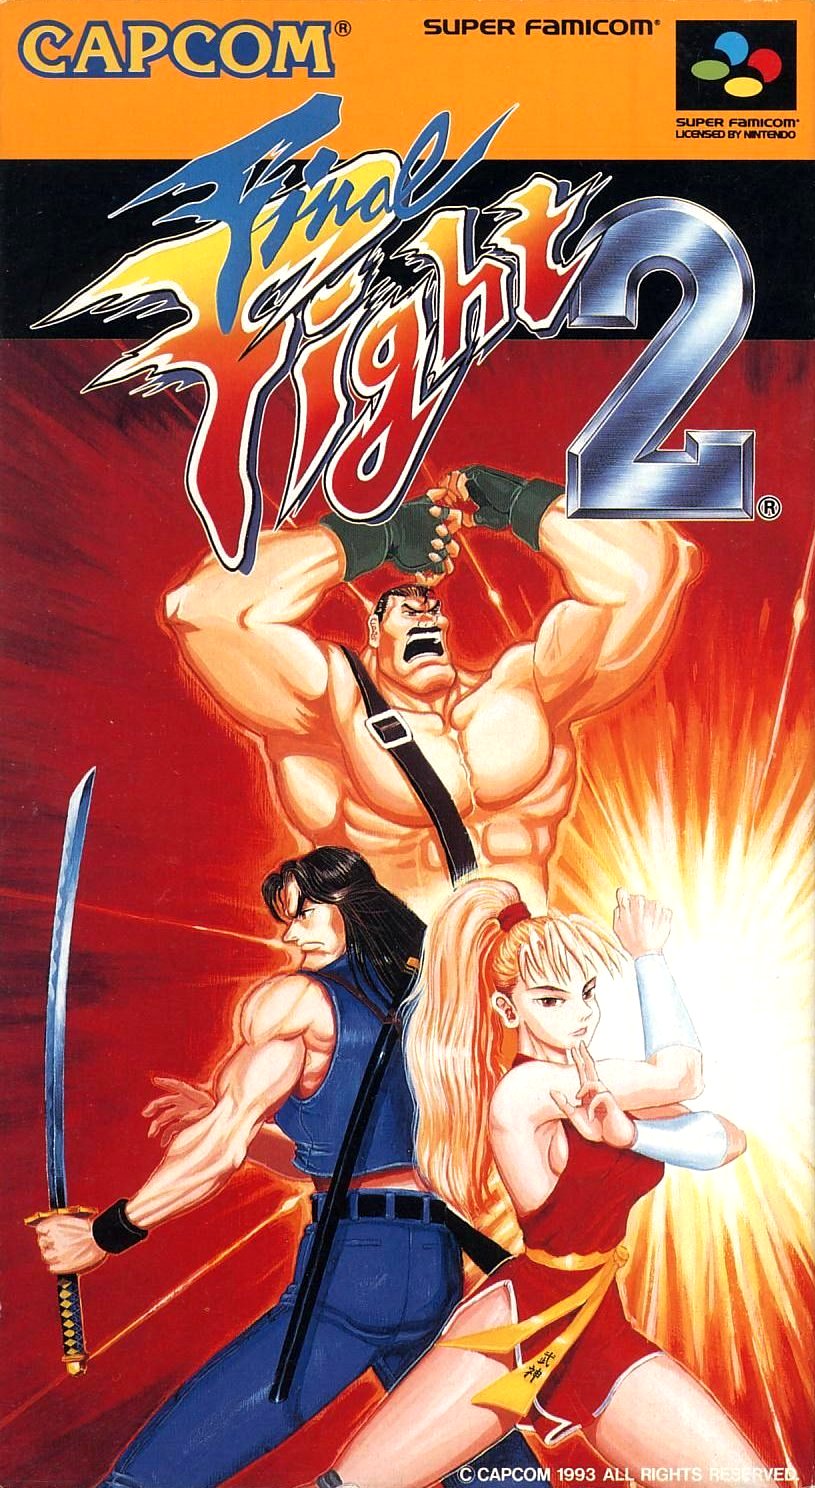 Street Fighter: Duel é uma experiência gratuita e insana que cabe